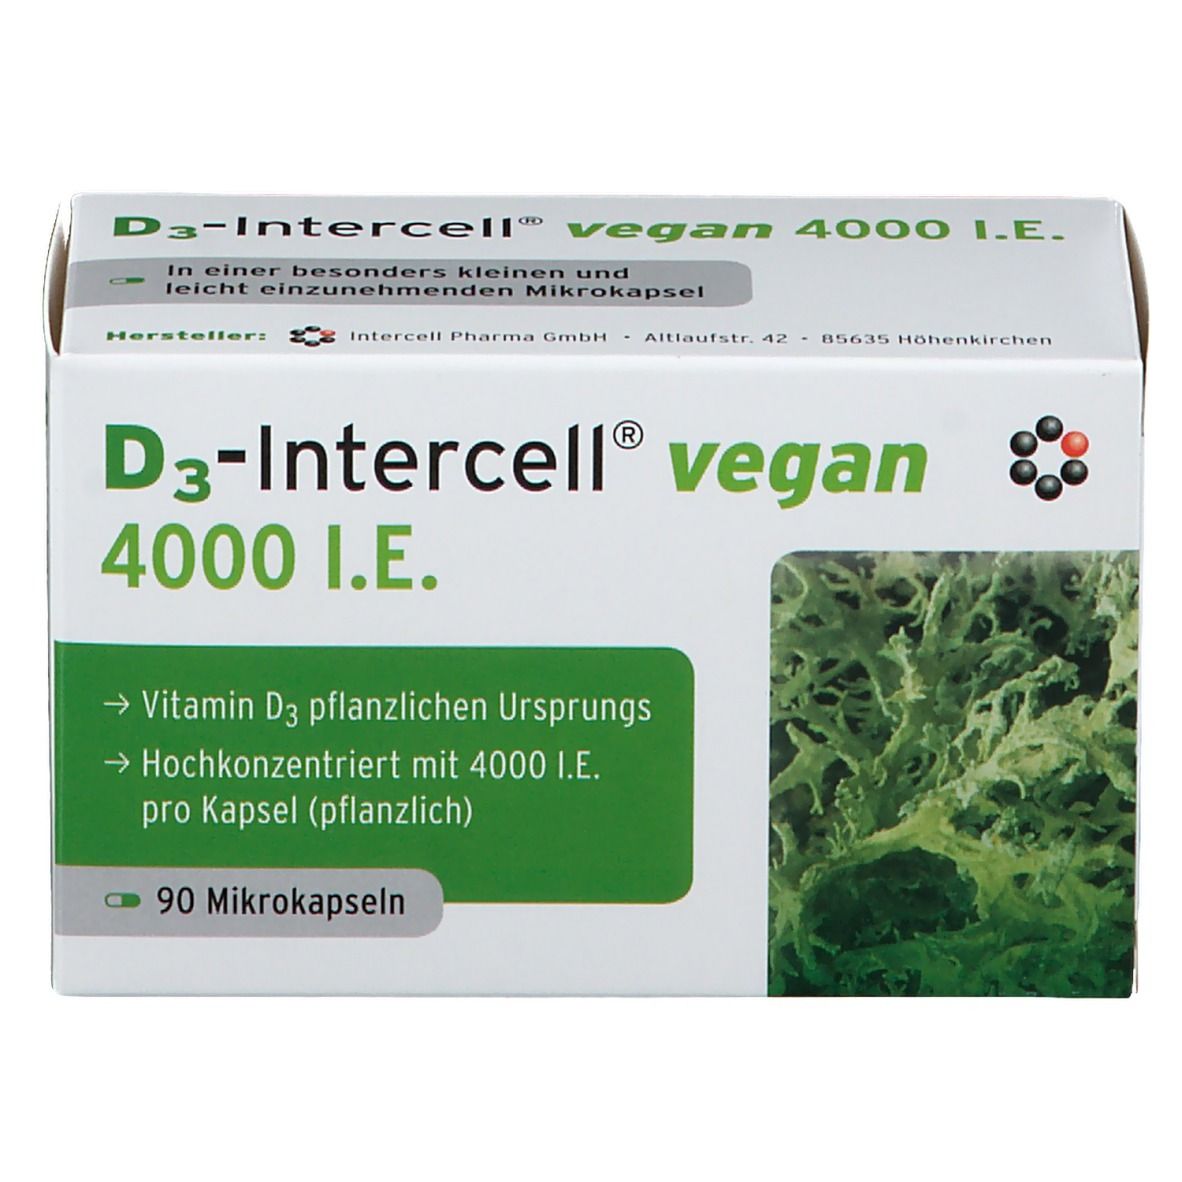 D3-Intercell Vegan 4000 I.E.